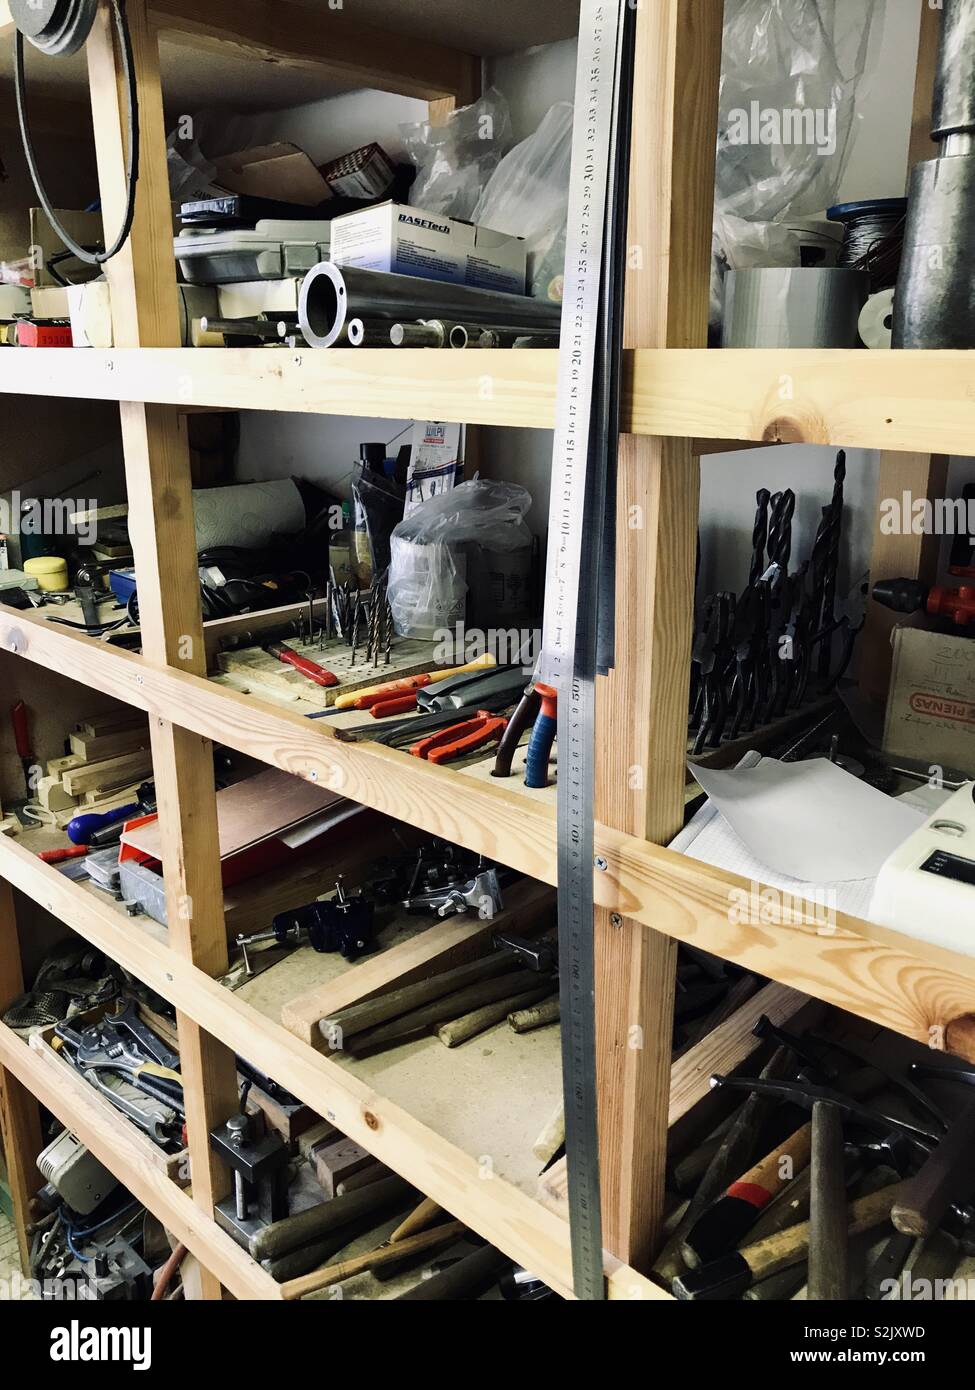 Estante para herramientas de taller de metal. Organización del espacio de trabajo Foto de stock